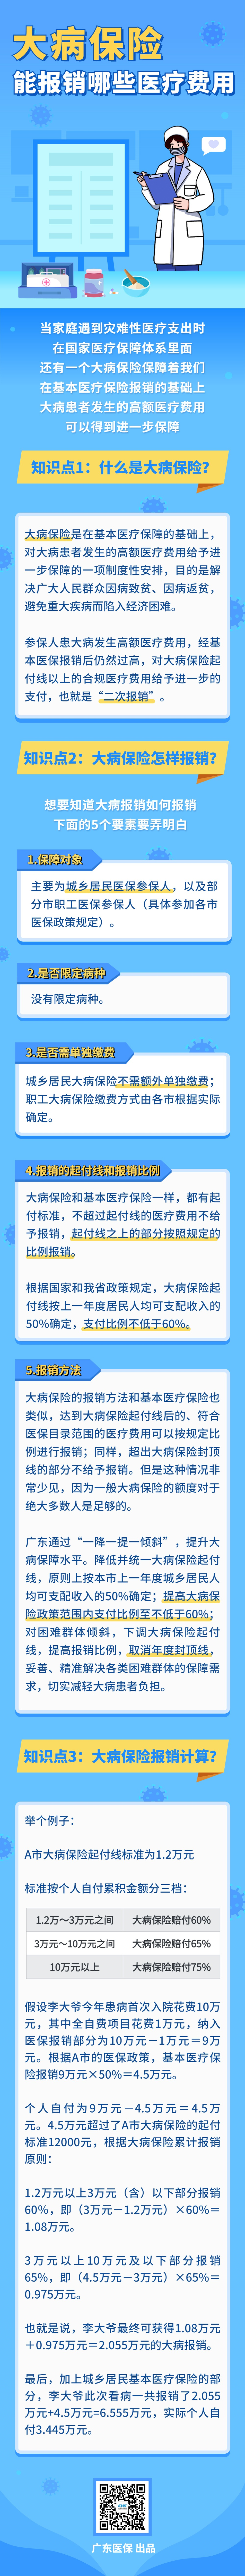 0812大病保险-医疗健康文章长图(1).jpg